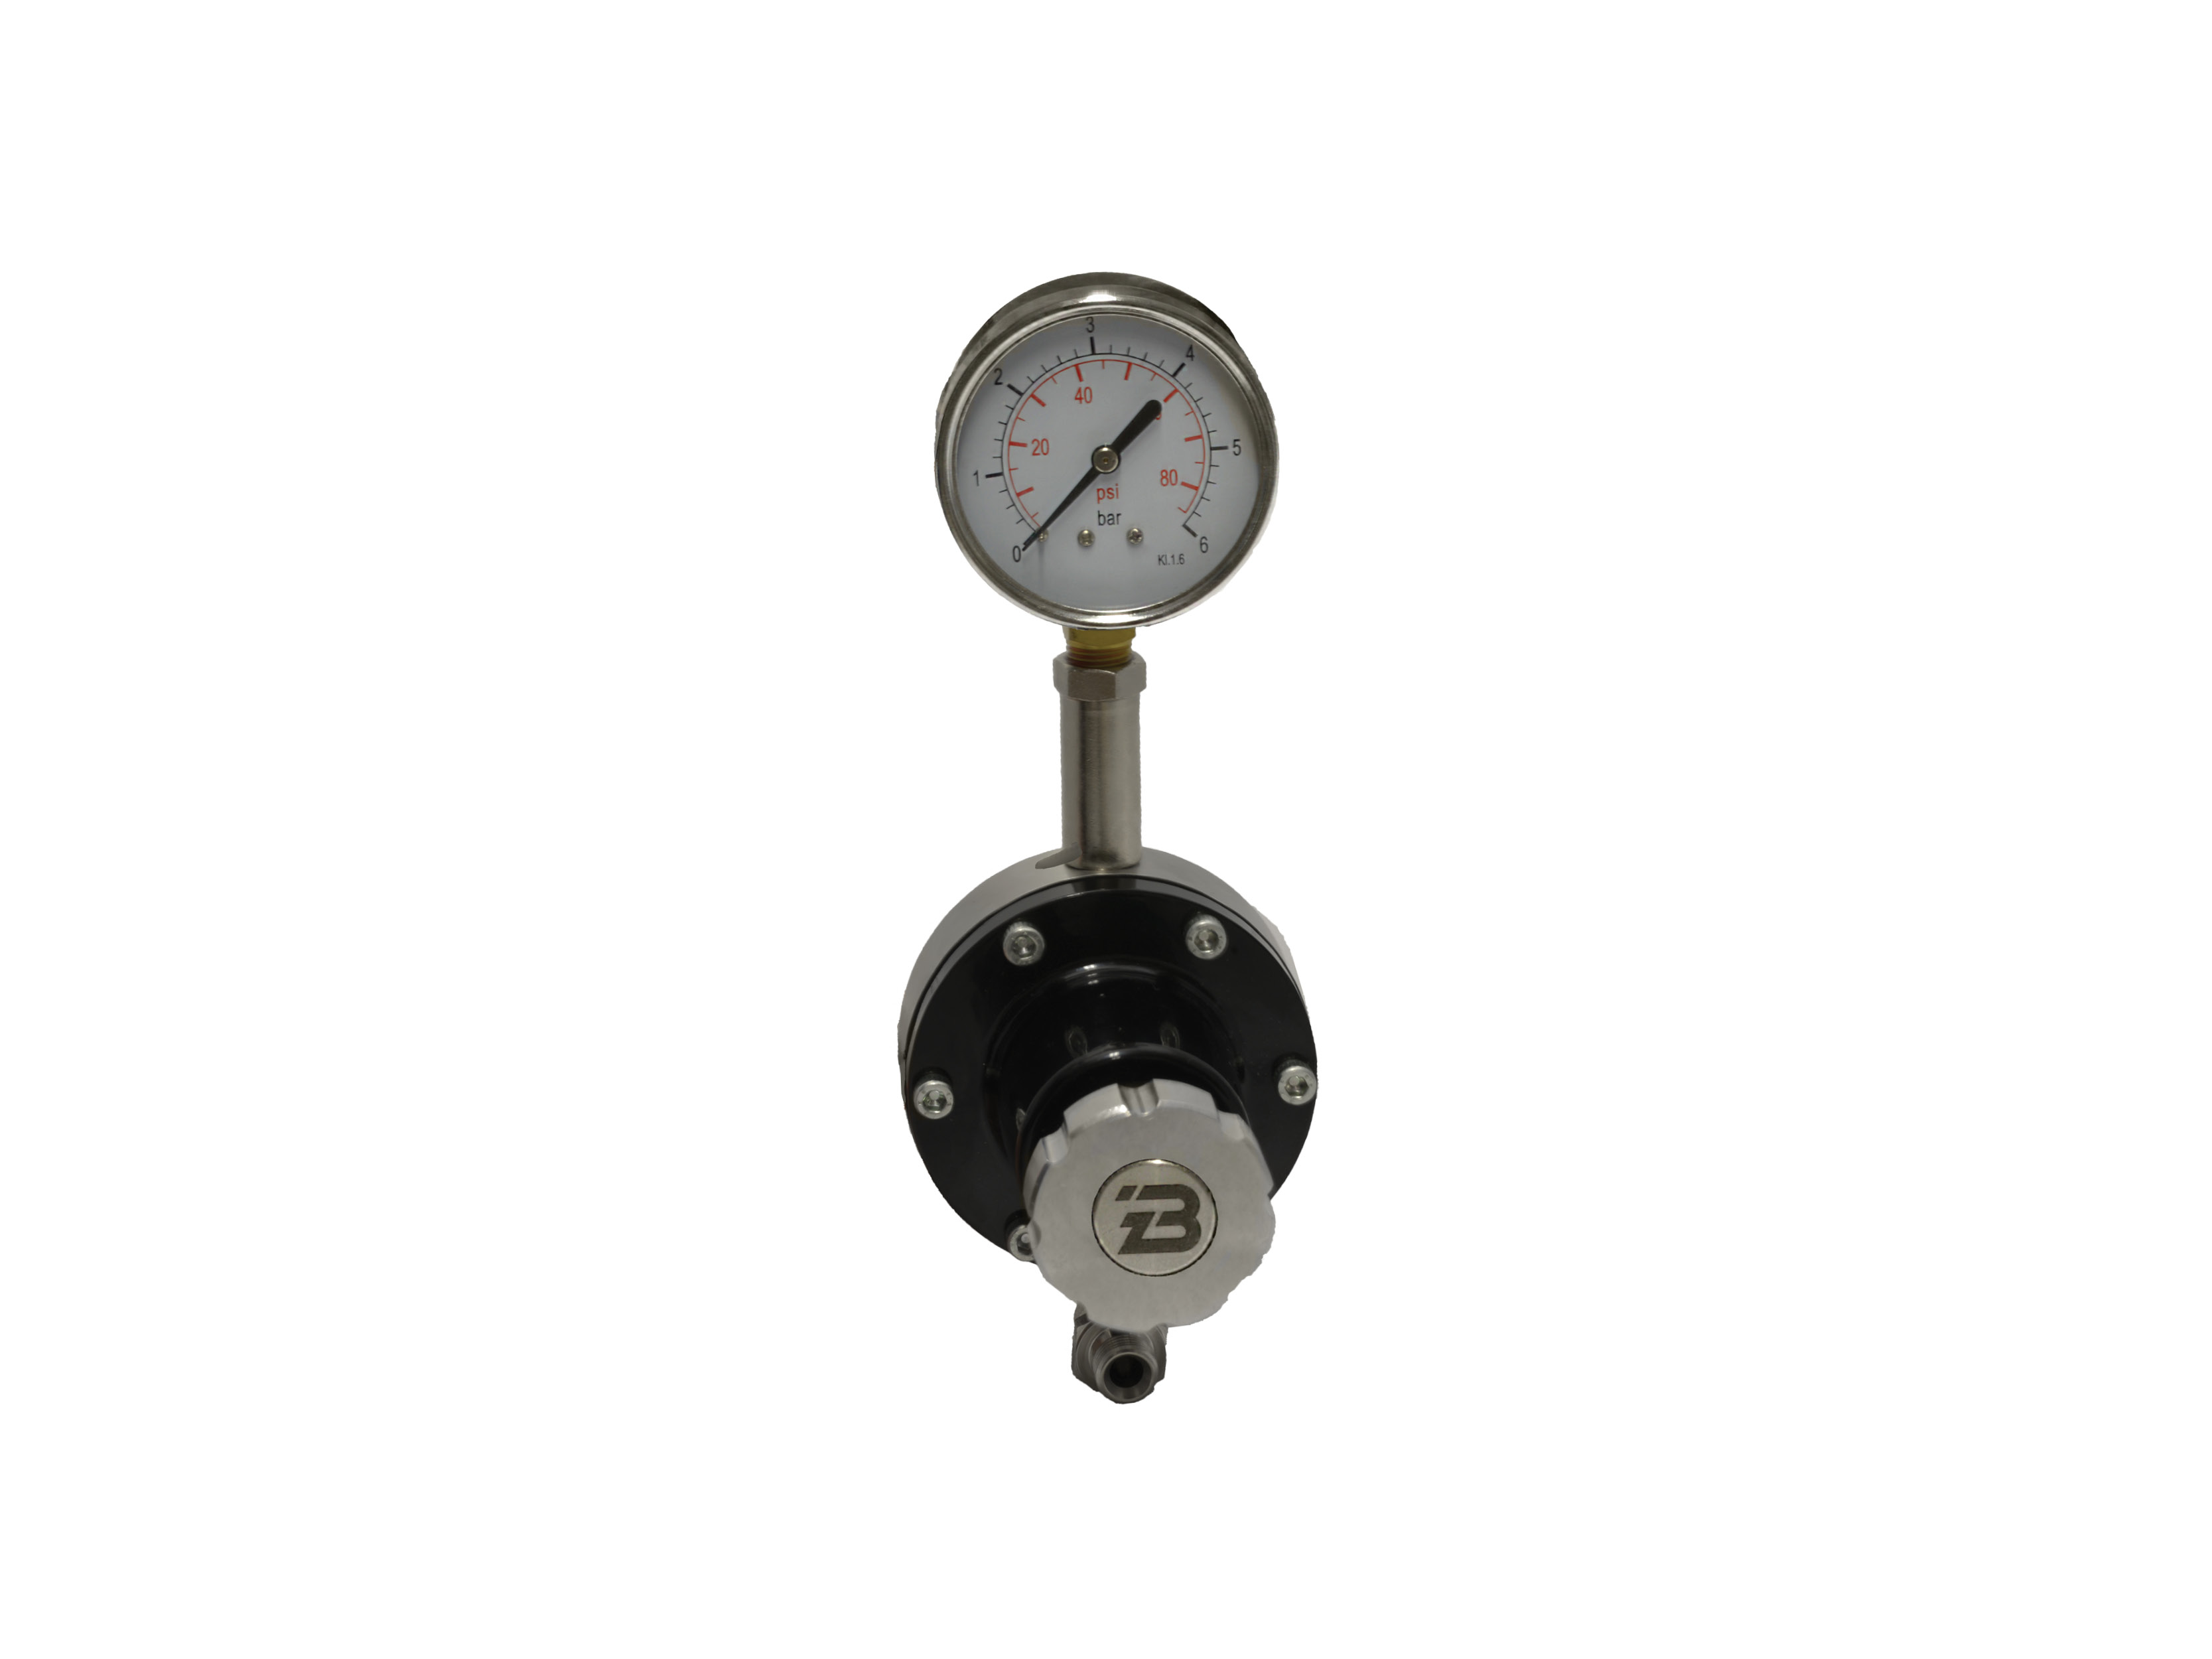 berizzi-regolatore-di-pressione-per-liquidi-0-6bar-in-acciaio-inox-completo-di-riduzione